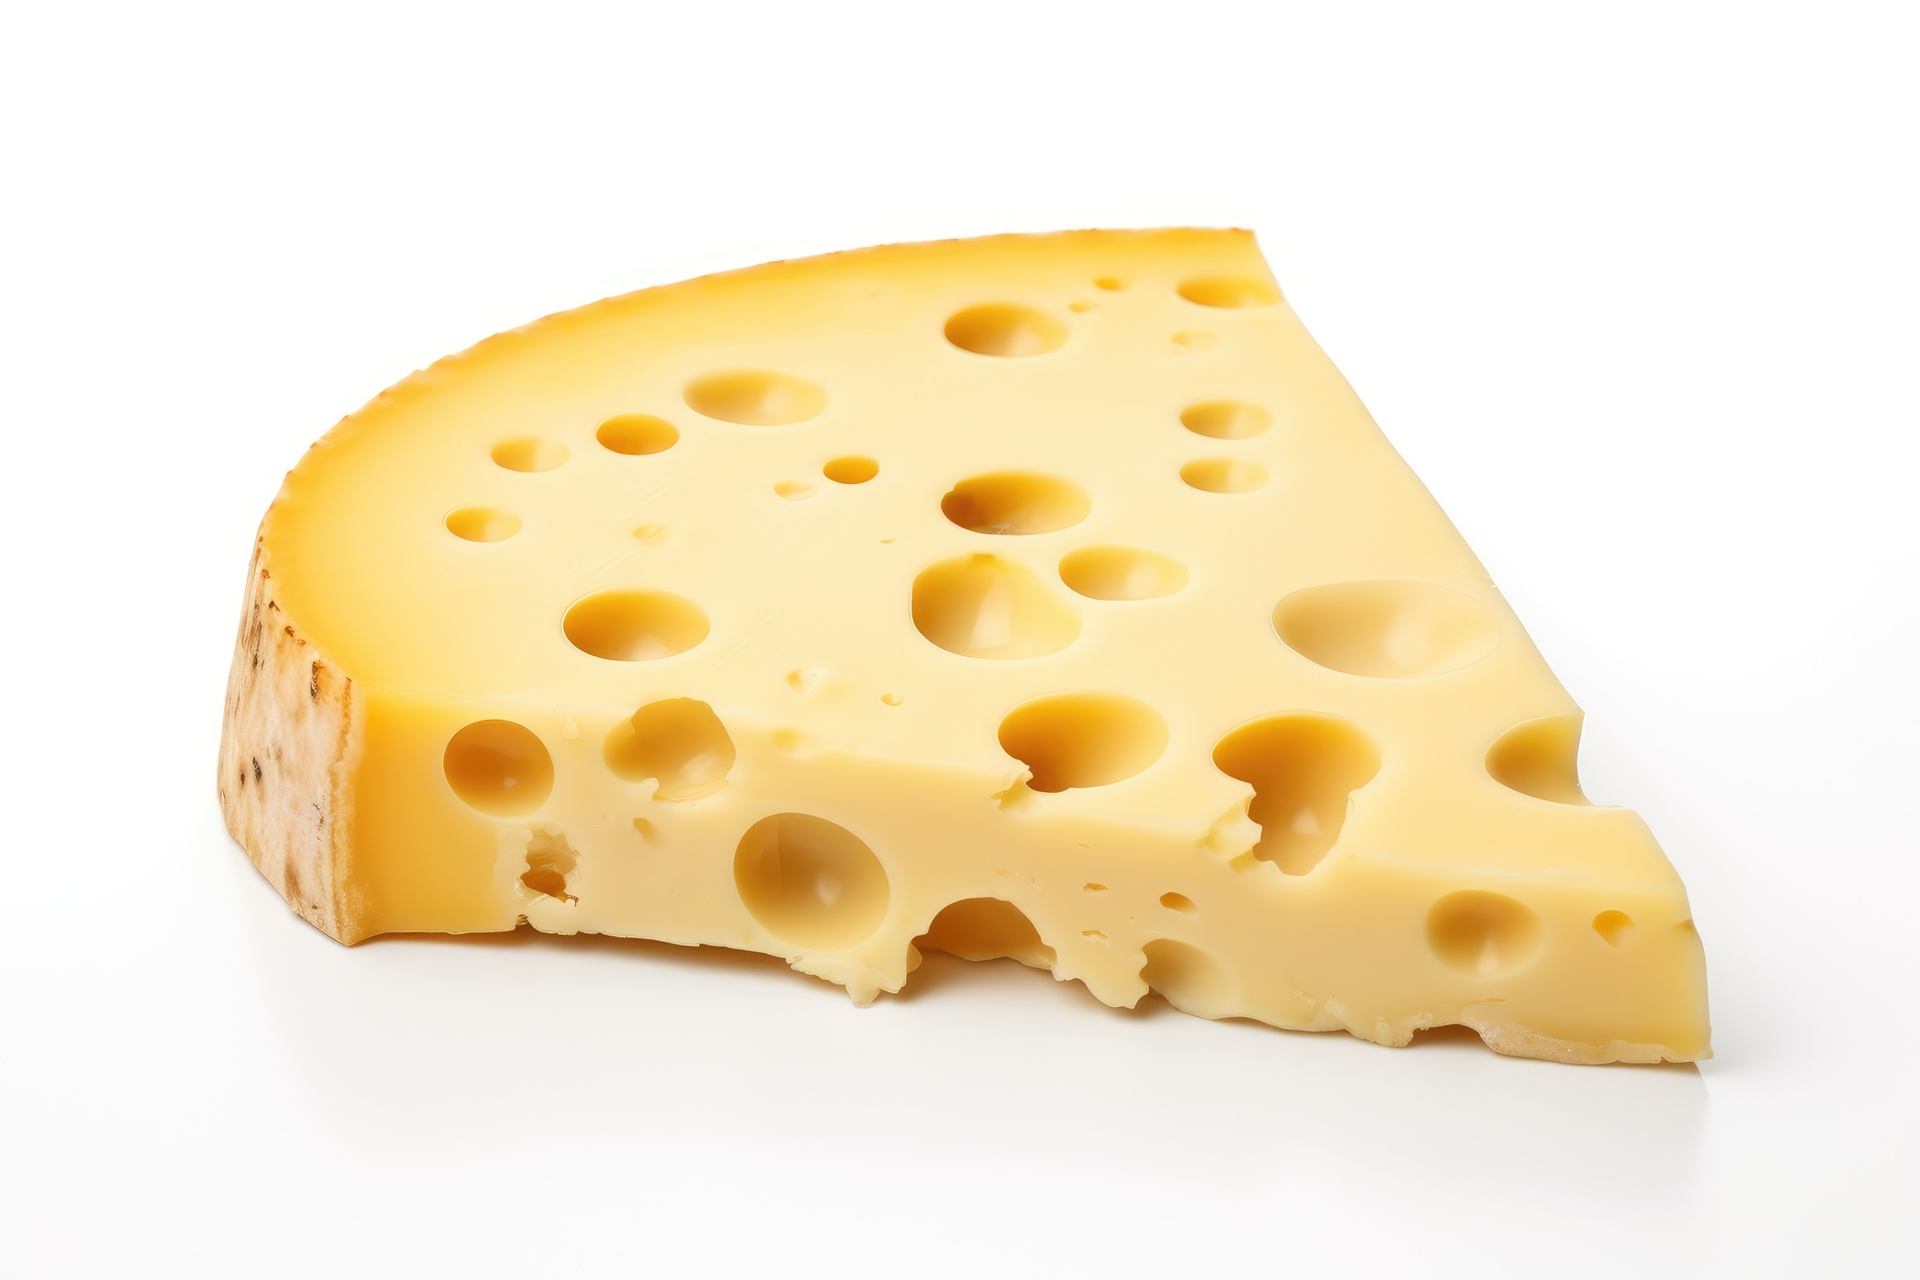 Na tym obrazku widać wyjątkowy domowy ser żółty z charakterystycznymi, drobnymi dziurami, które nadają mu unikalnego wyglądu. Jego intensywny, złocisty kolor przyciąga uwagę, a gładka, kremowa konsystencja obiecuje doskonały smak. Obrazek ilustruje nie tylko estetyczną stronę domowego sera żółtego z dziurami, ale także wzbudza apetyt i zachęca do rozkoszowania się jego wyjątkowym smakołykiem